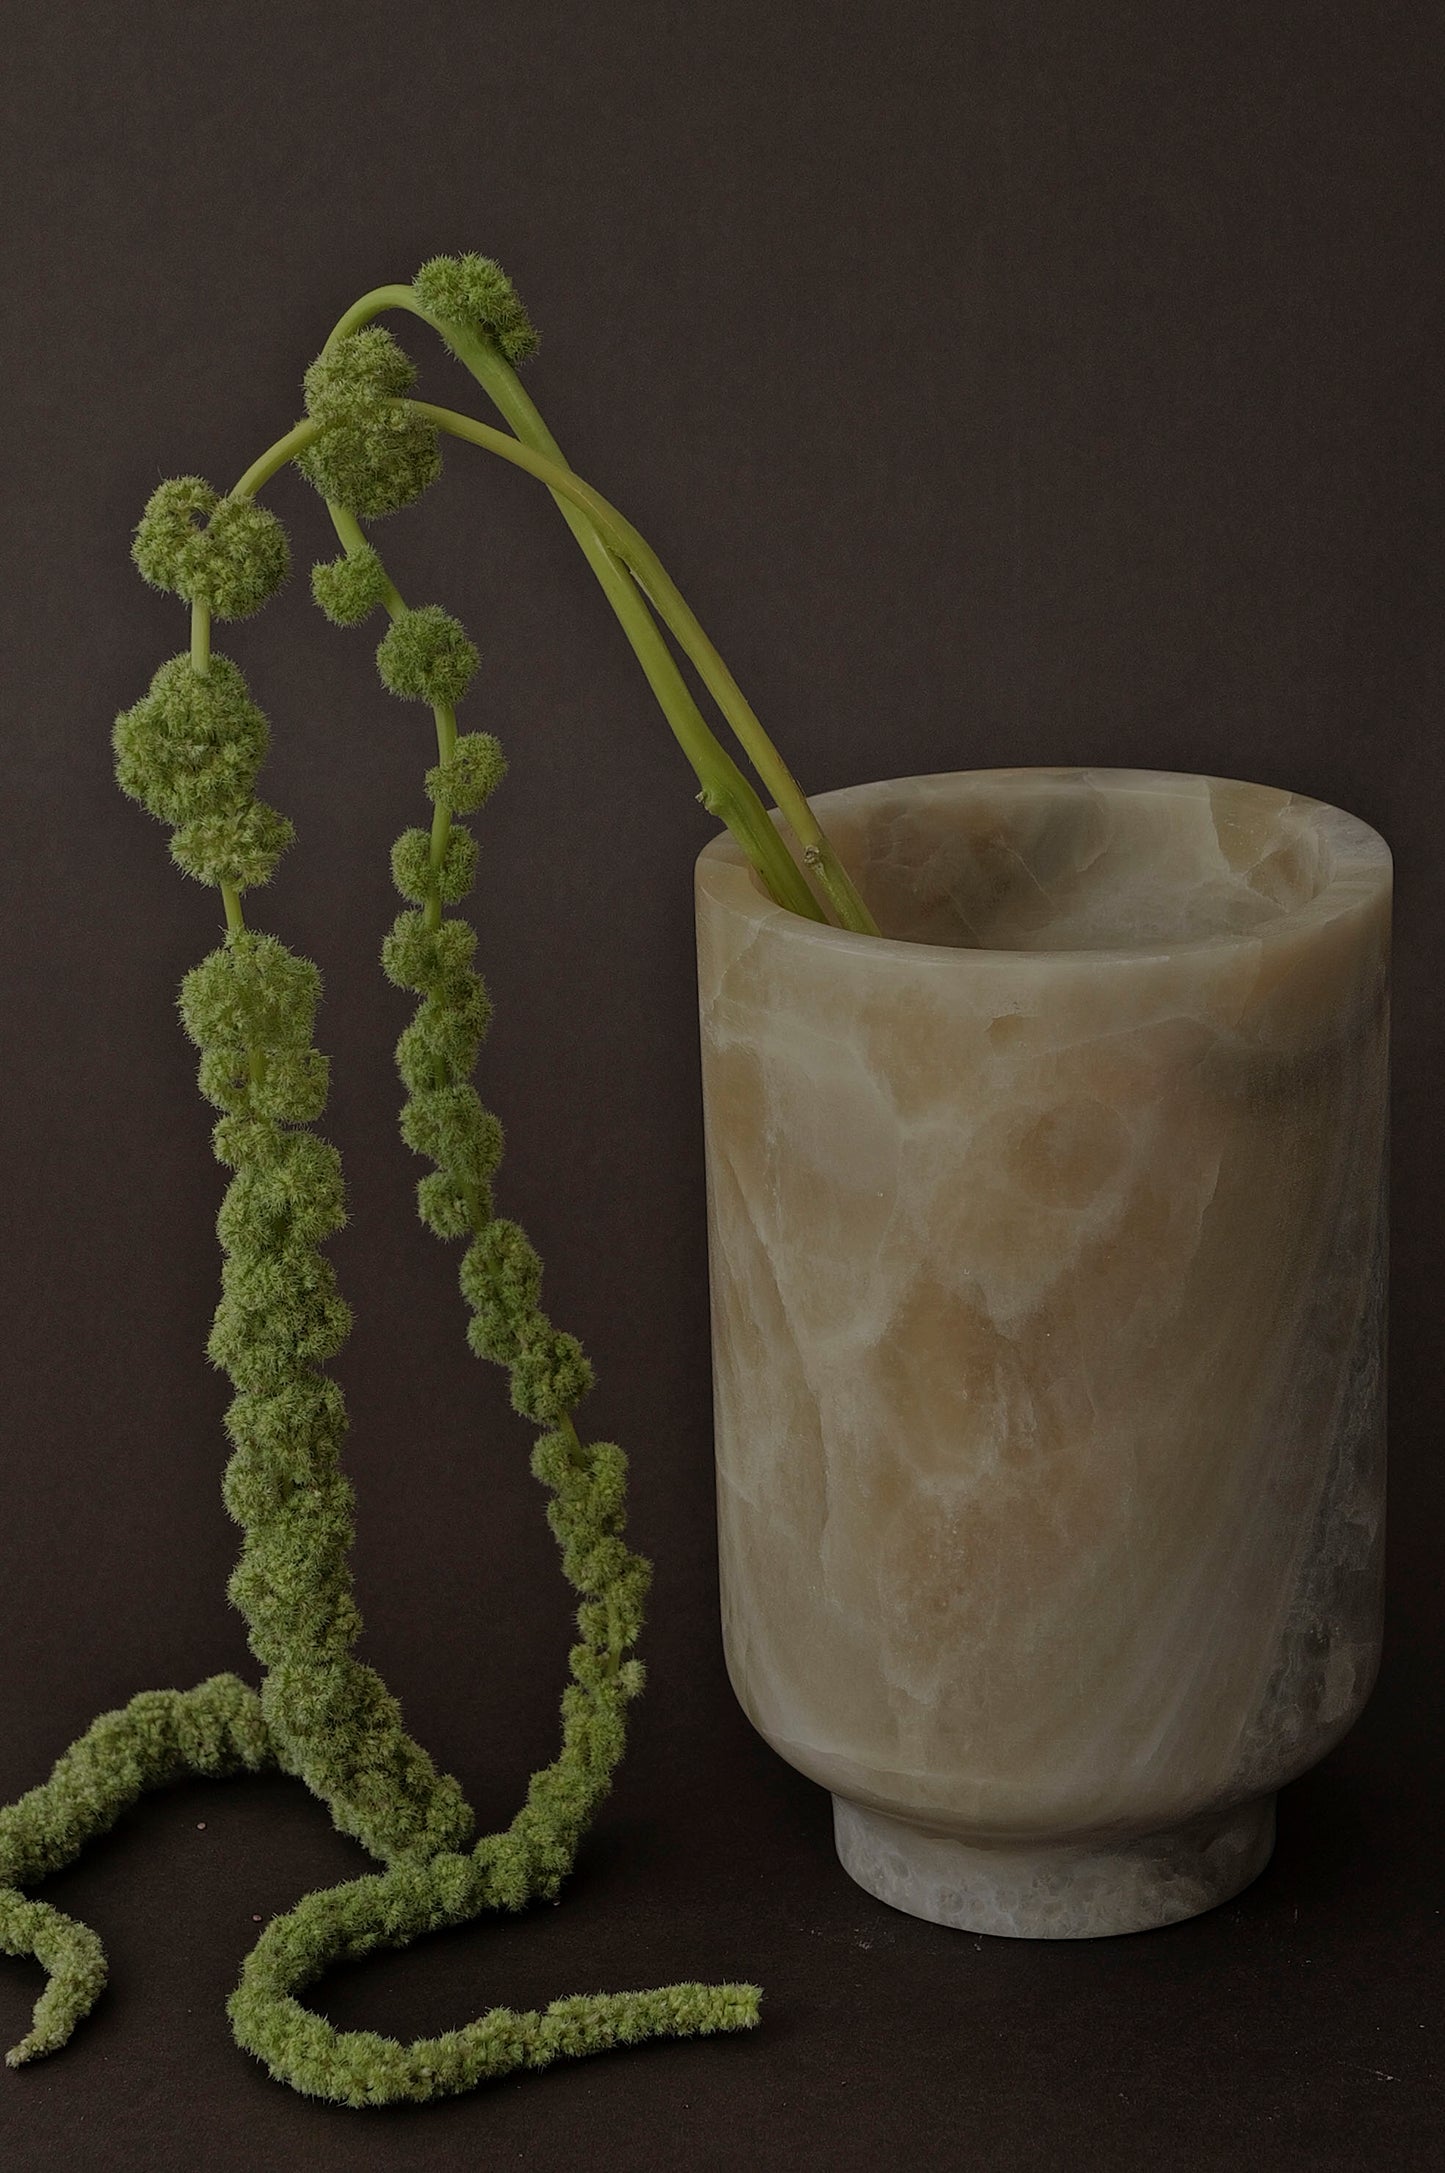 Large Vase, Onyx Marble